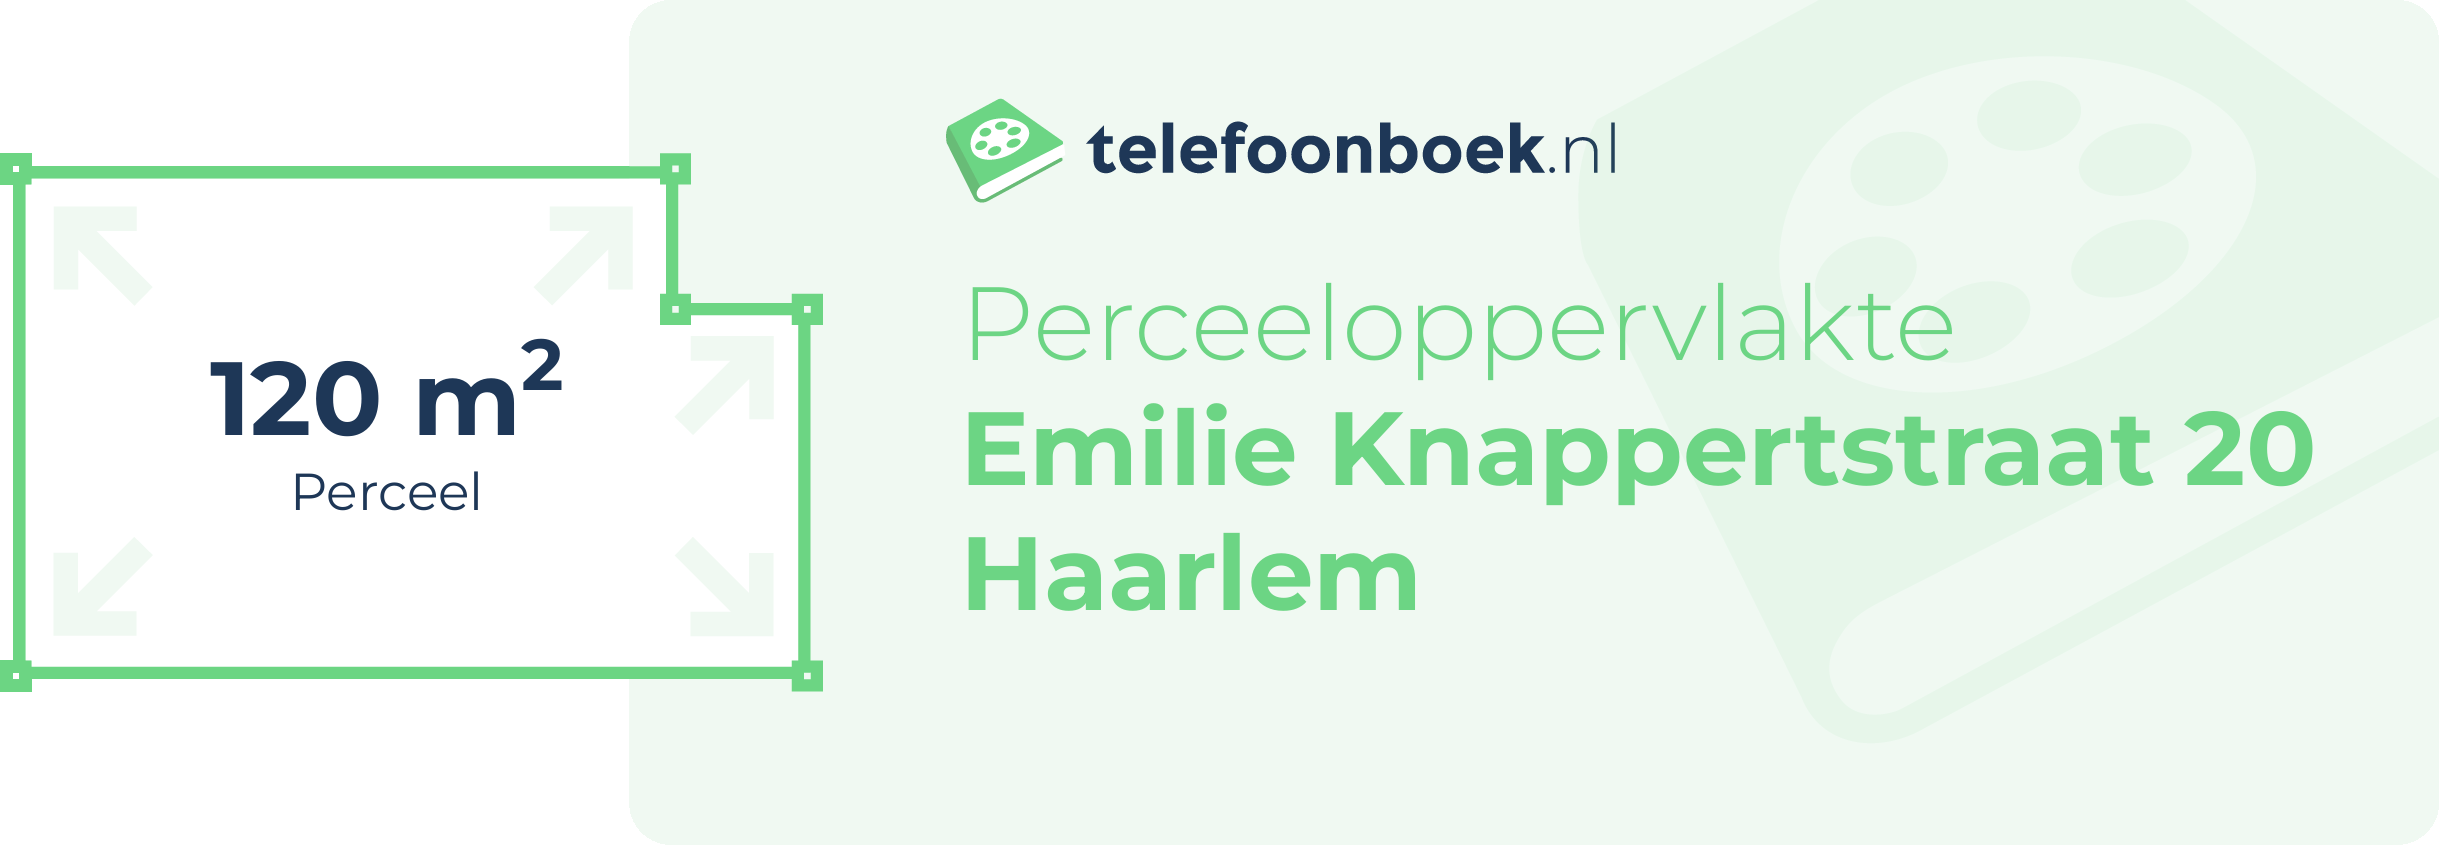 Perceeloppervlakte Emilie Knappertstraat 20 Haarlem